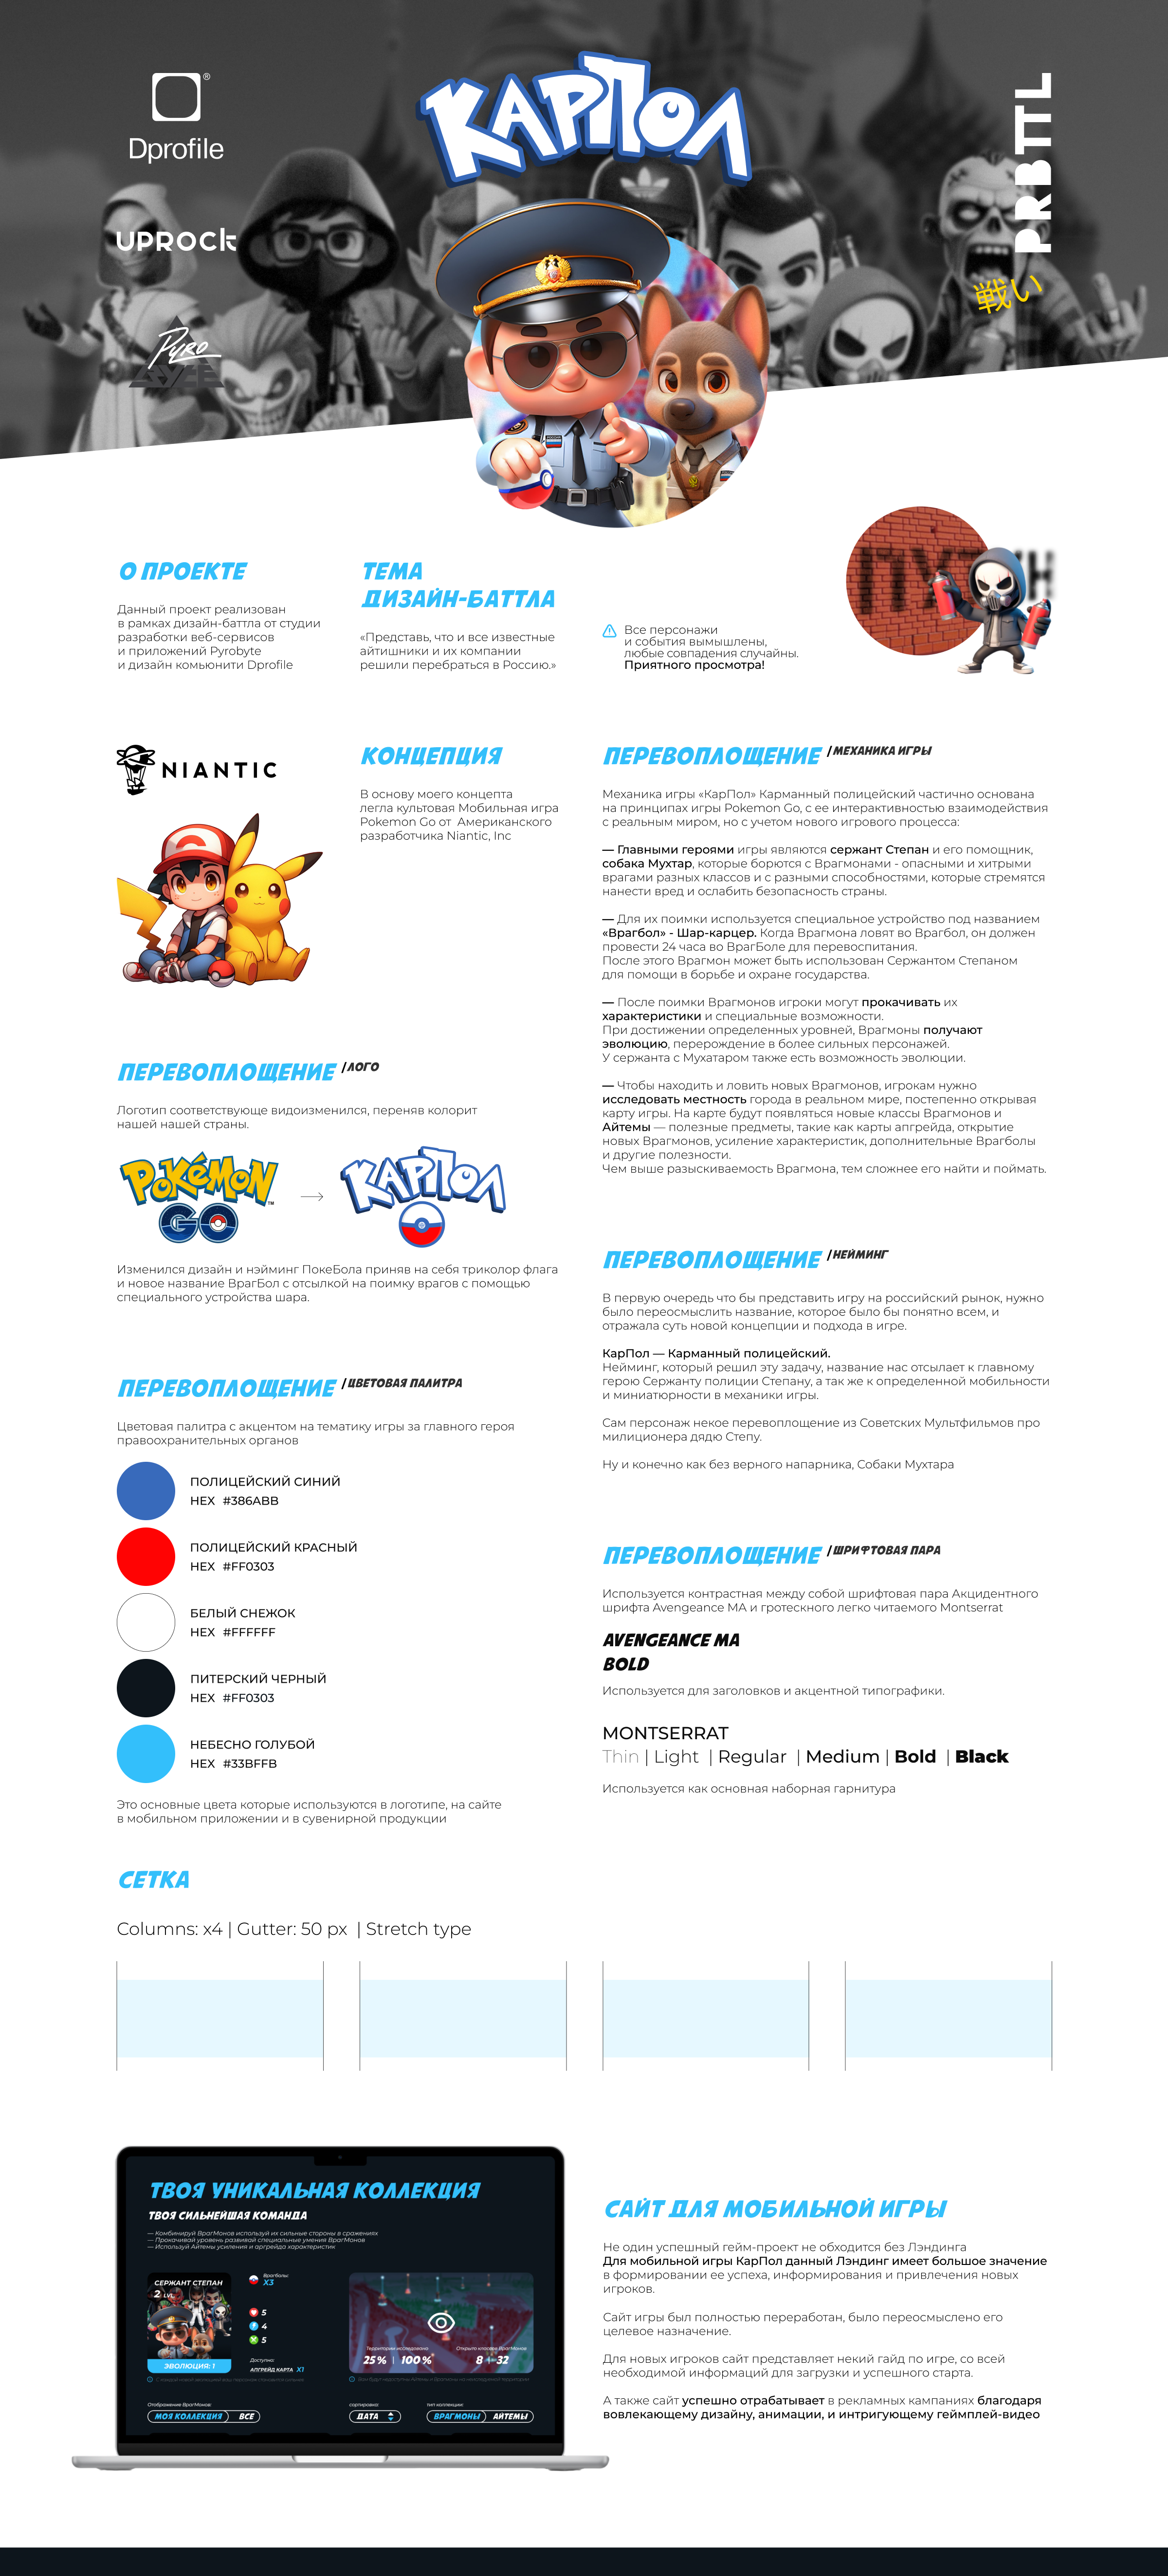 Pokémon GO|Карманный полицейский — Изображение №1 — Интерфейсы, Брендинг на Dprofile